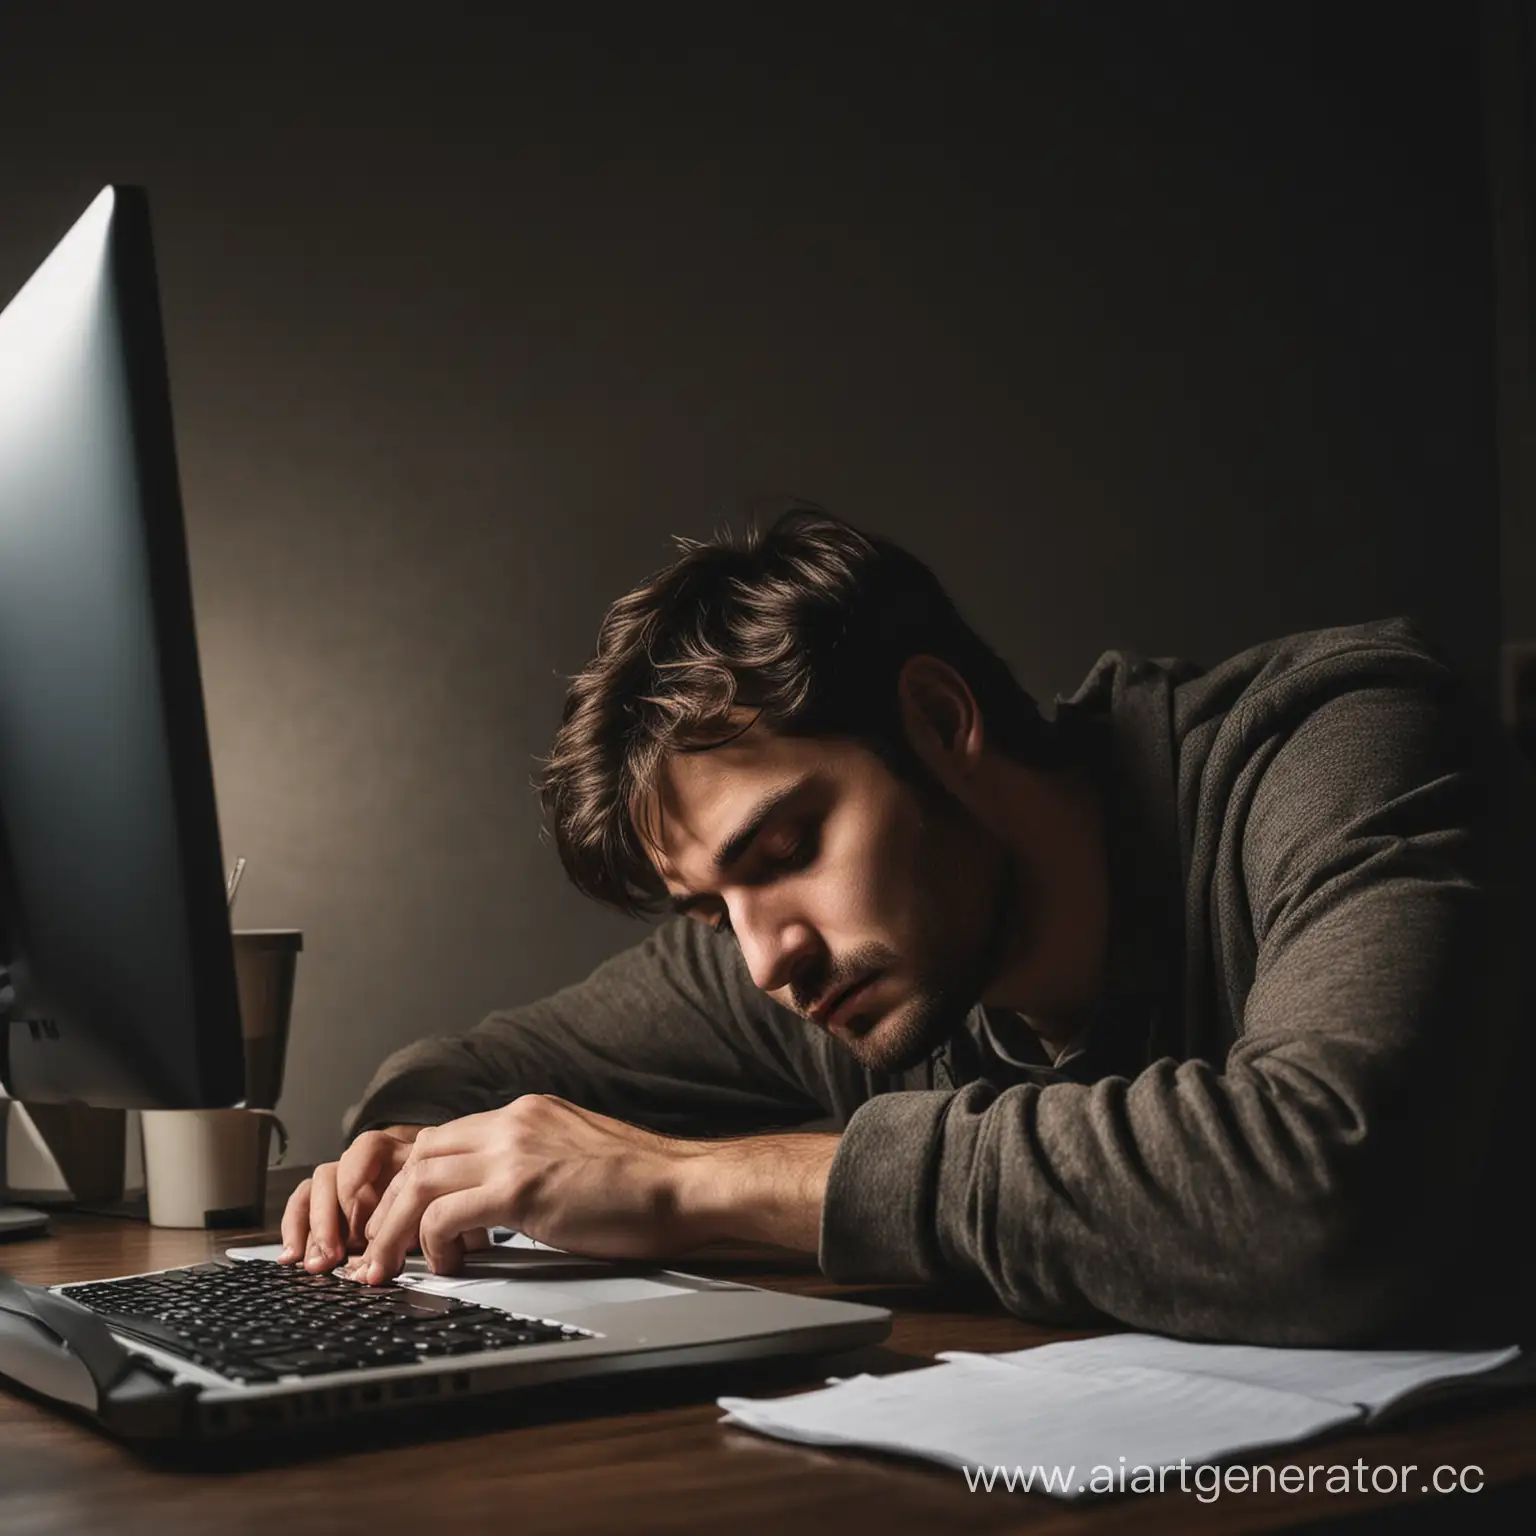 очень уставший человек спит пере компьютером в темной комнате, на столе рядом с ним стоит кружка с кофе